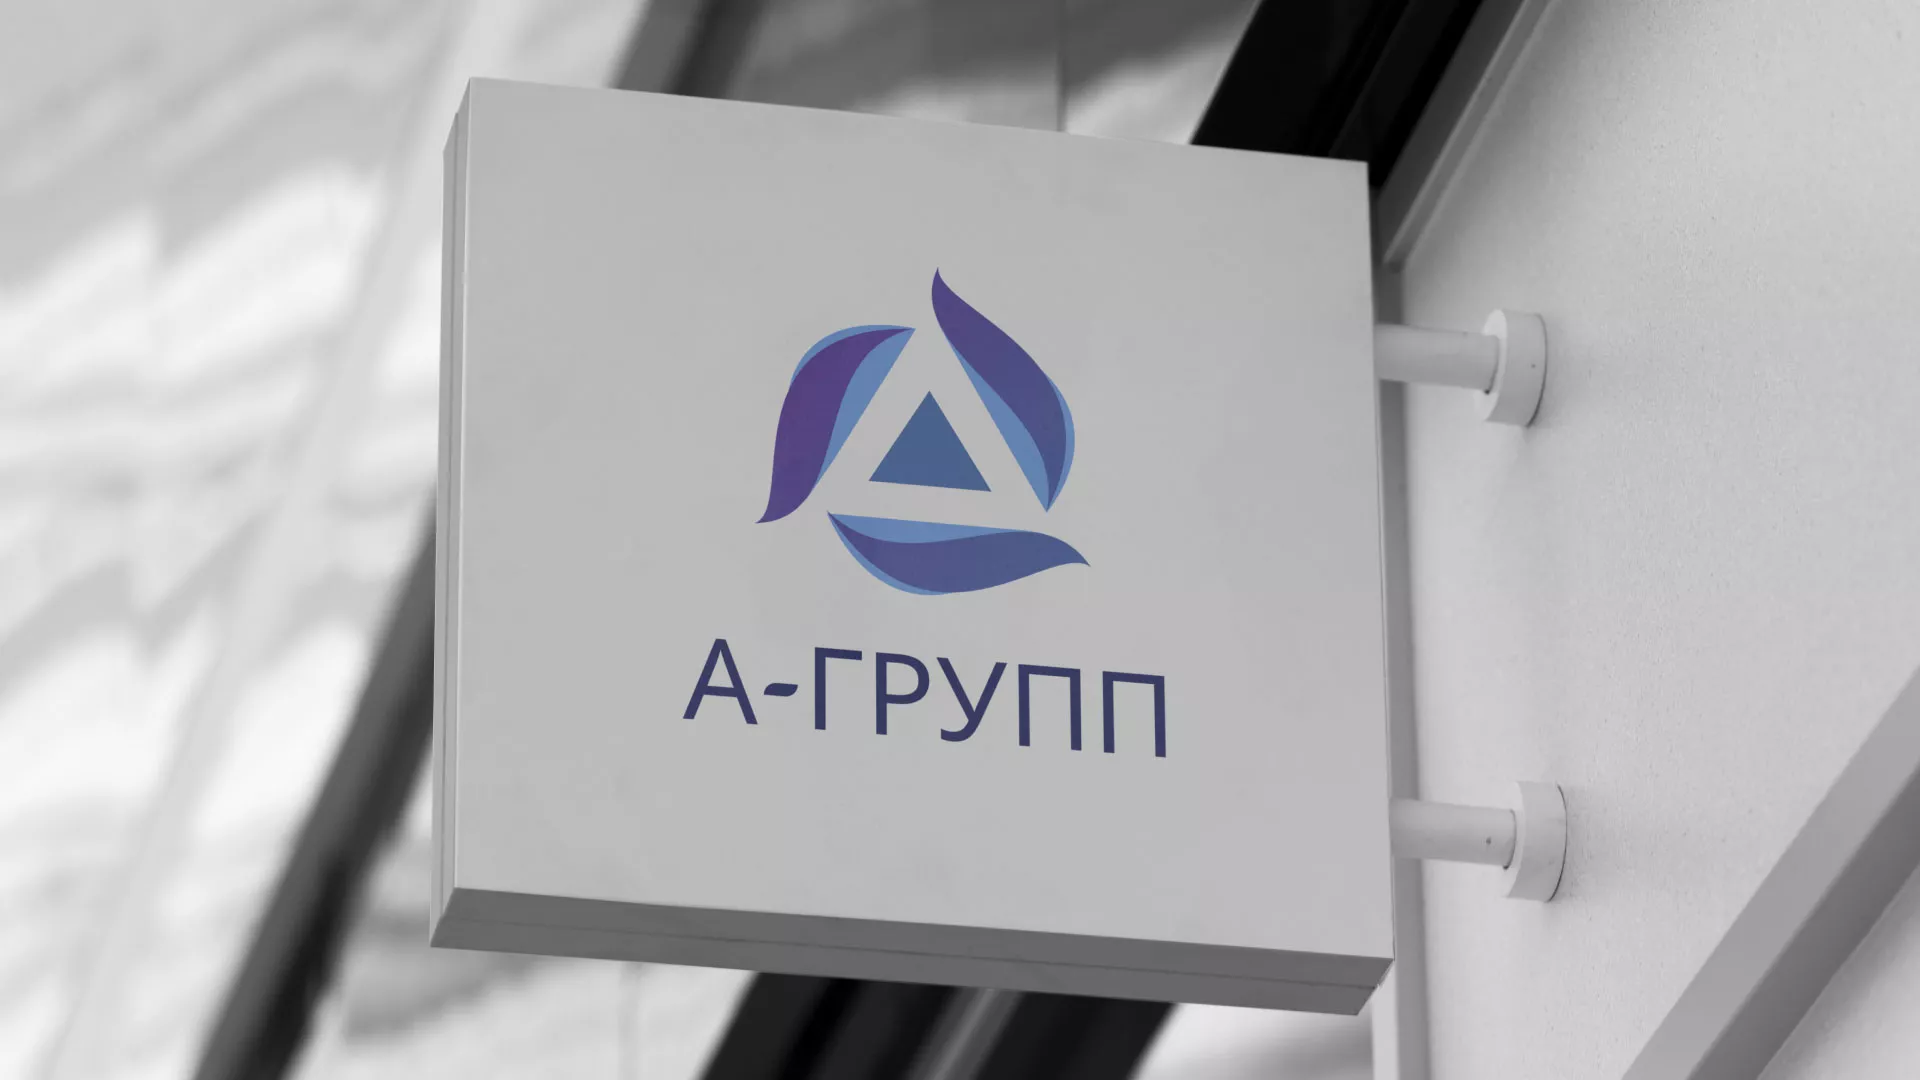 Создание логотипа компании «А-ГРУПП» в Суоярви